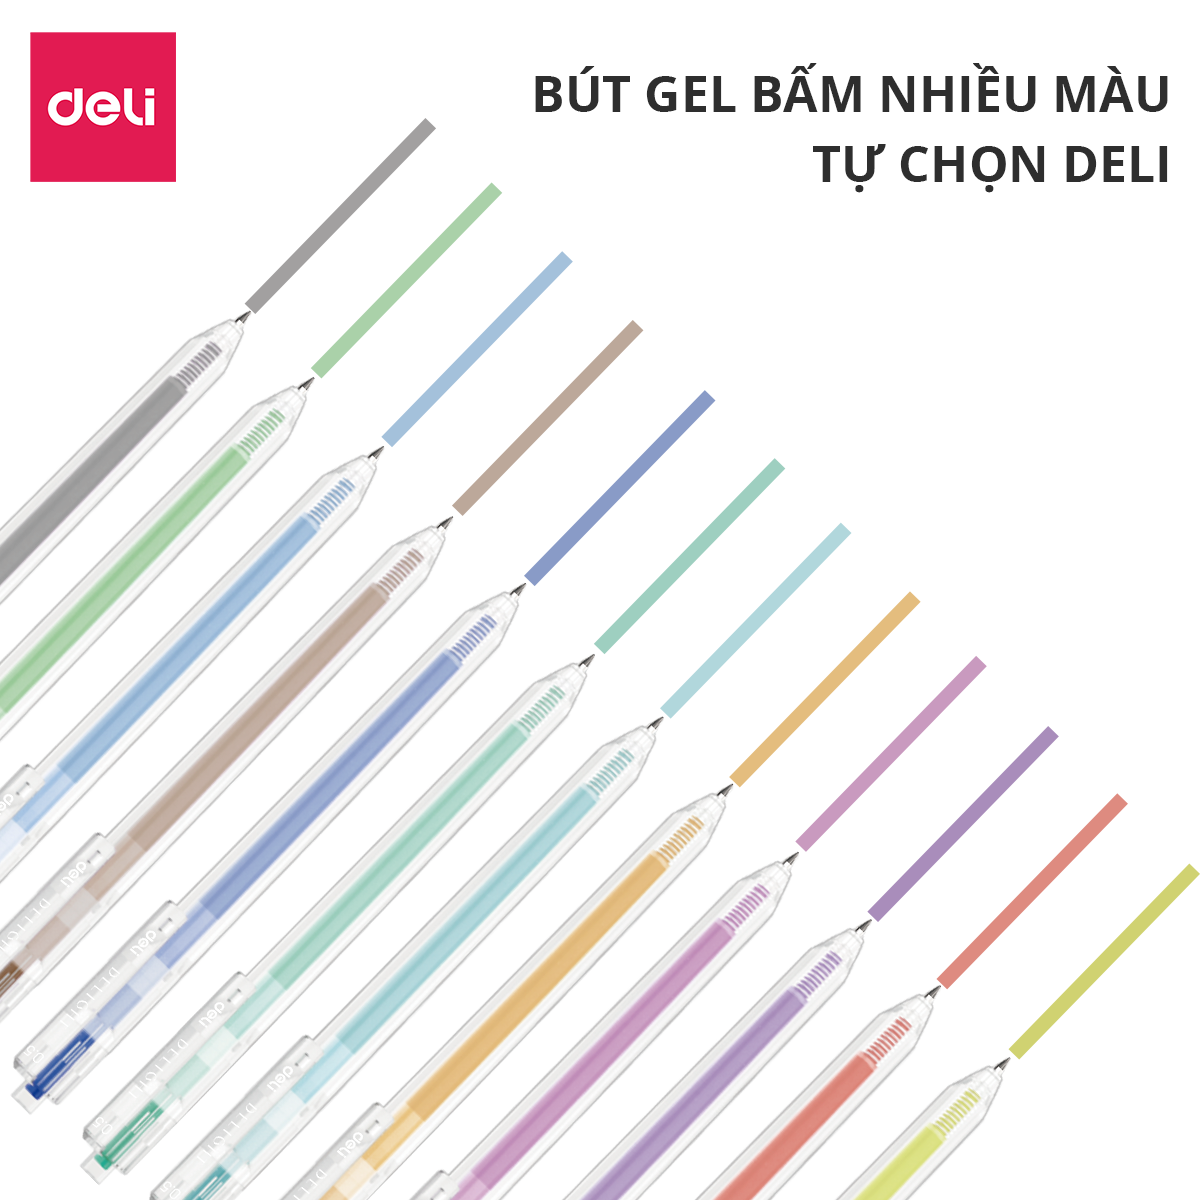 Bút gel bấm ngòi 0.5mm nhiều màu Deli - Độ dài mực lên tới 1000m - 12 màu mực - 1 chiếc - EG118